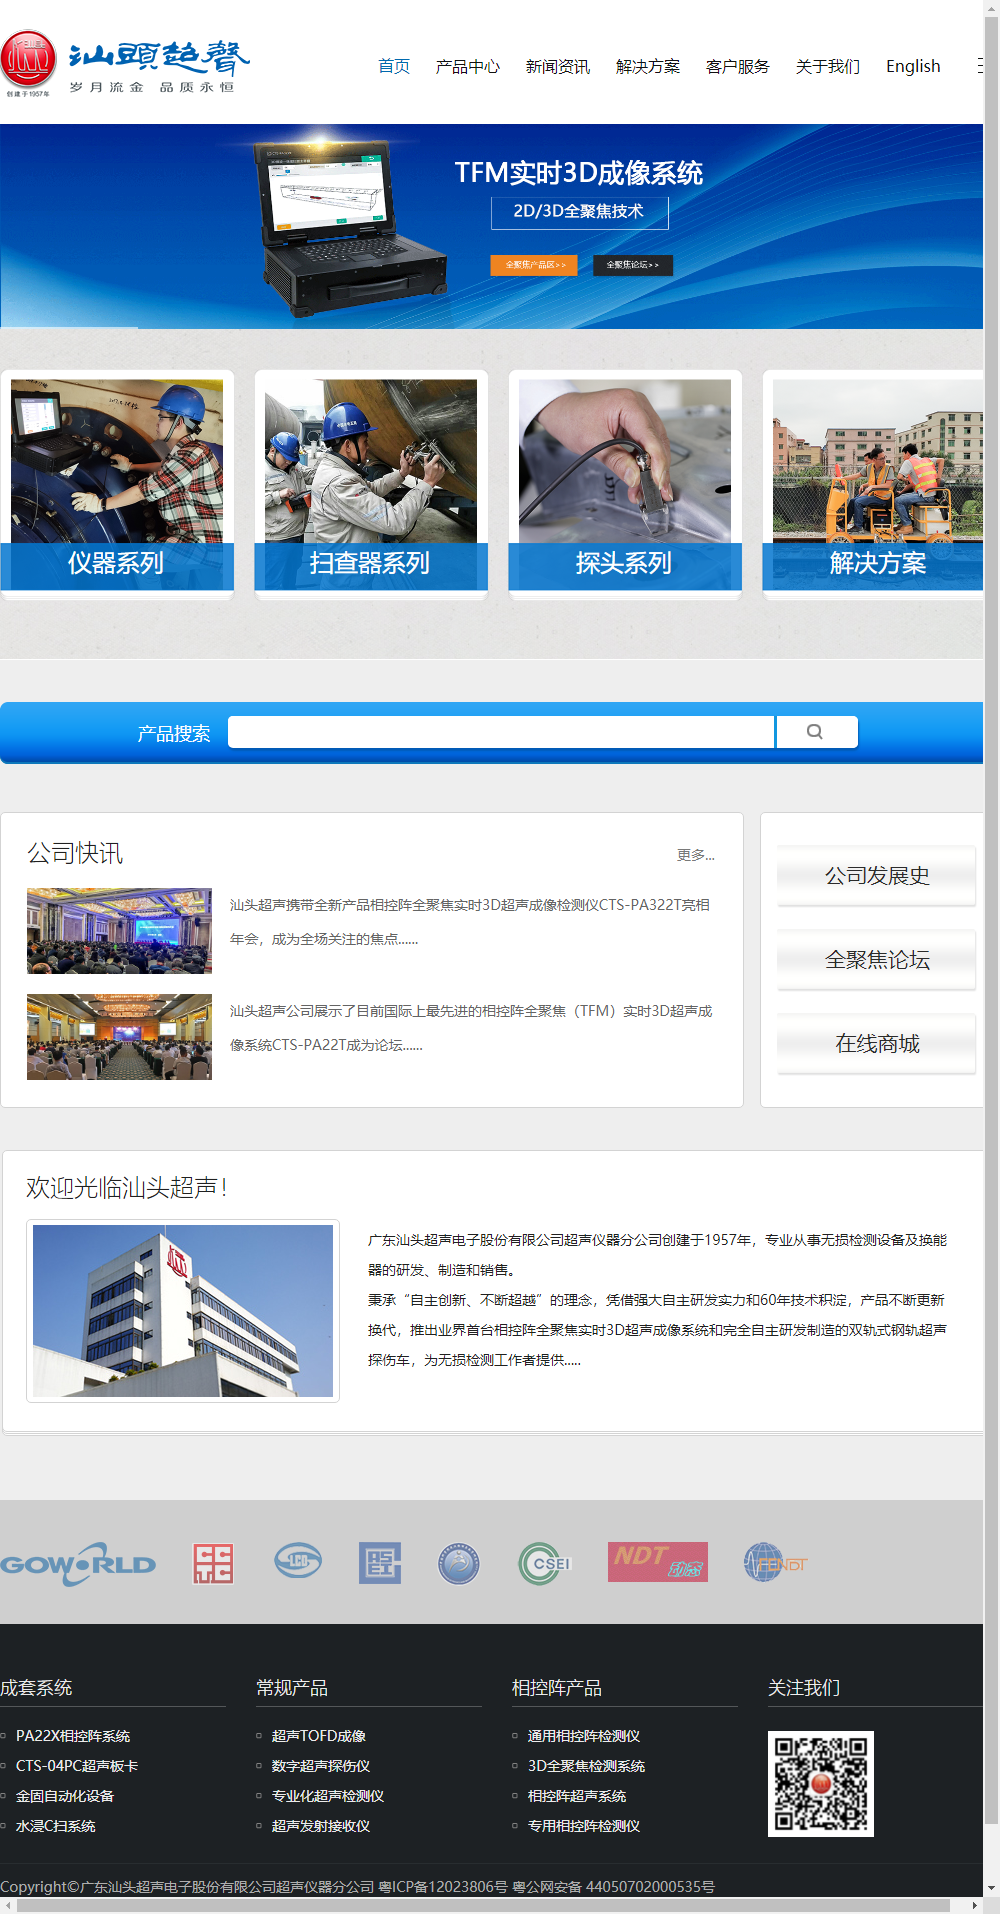 广东汕头超声电子股份有限公司超声仪器分公司网站案例